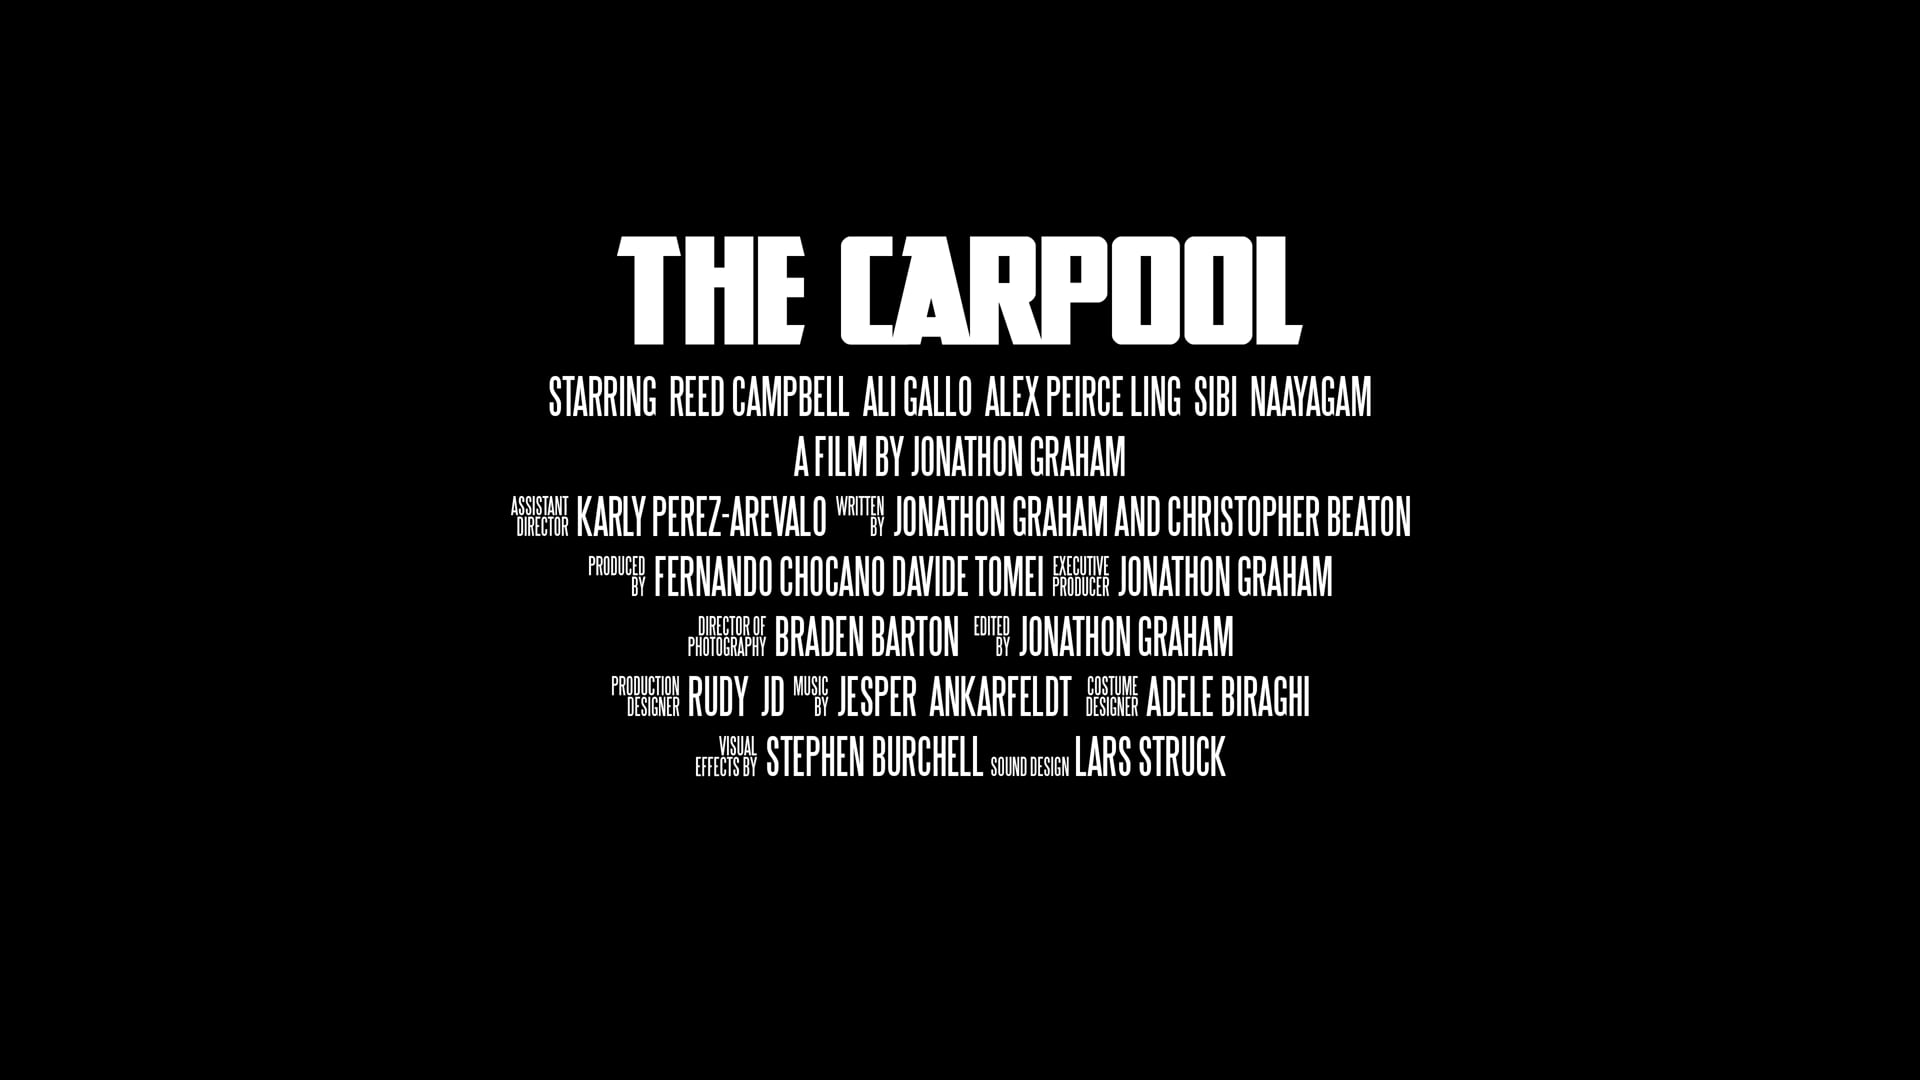 'The Carpool' Teaser